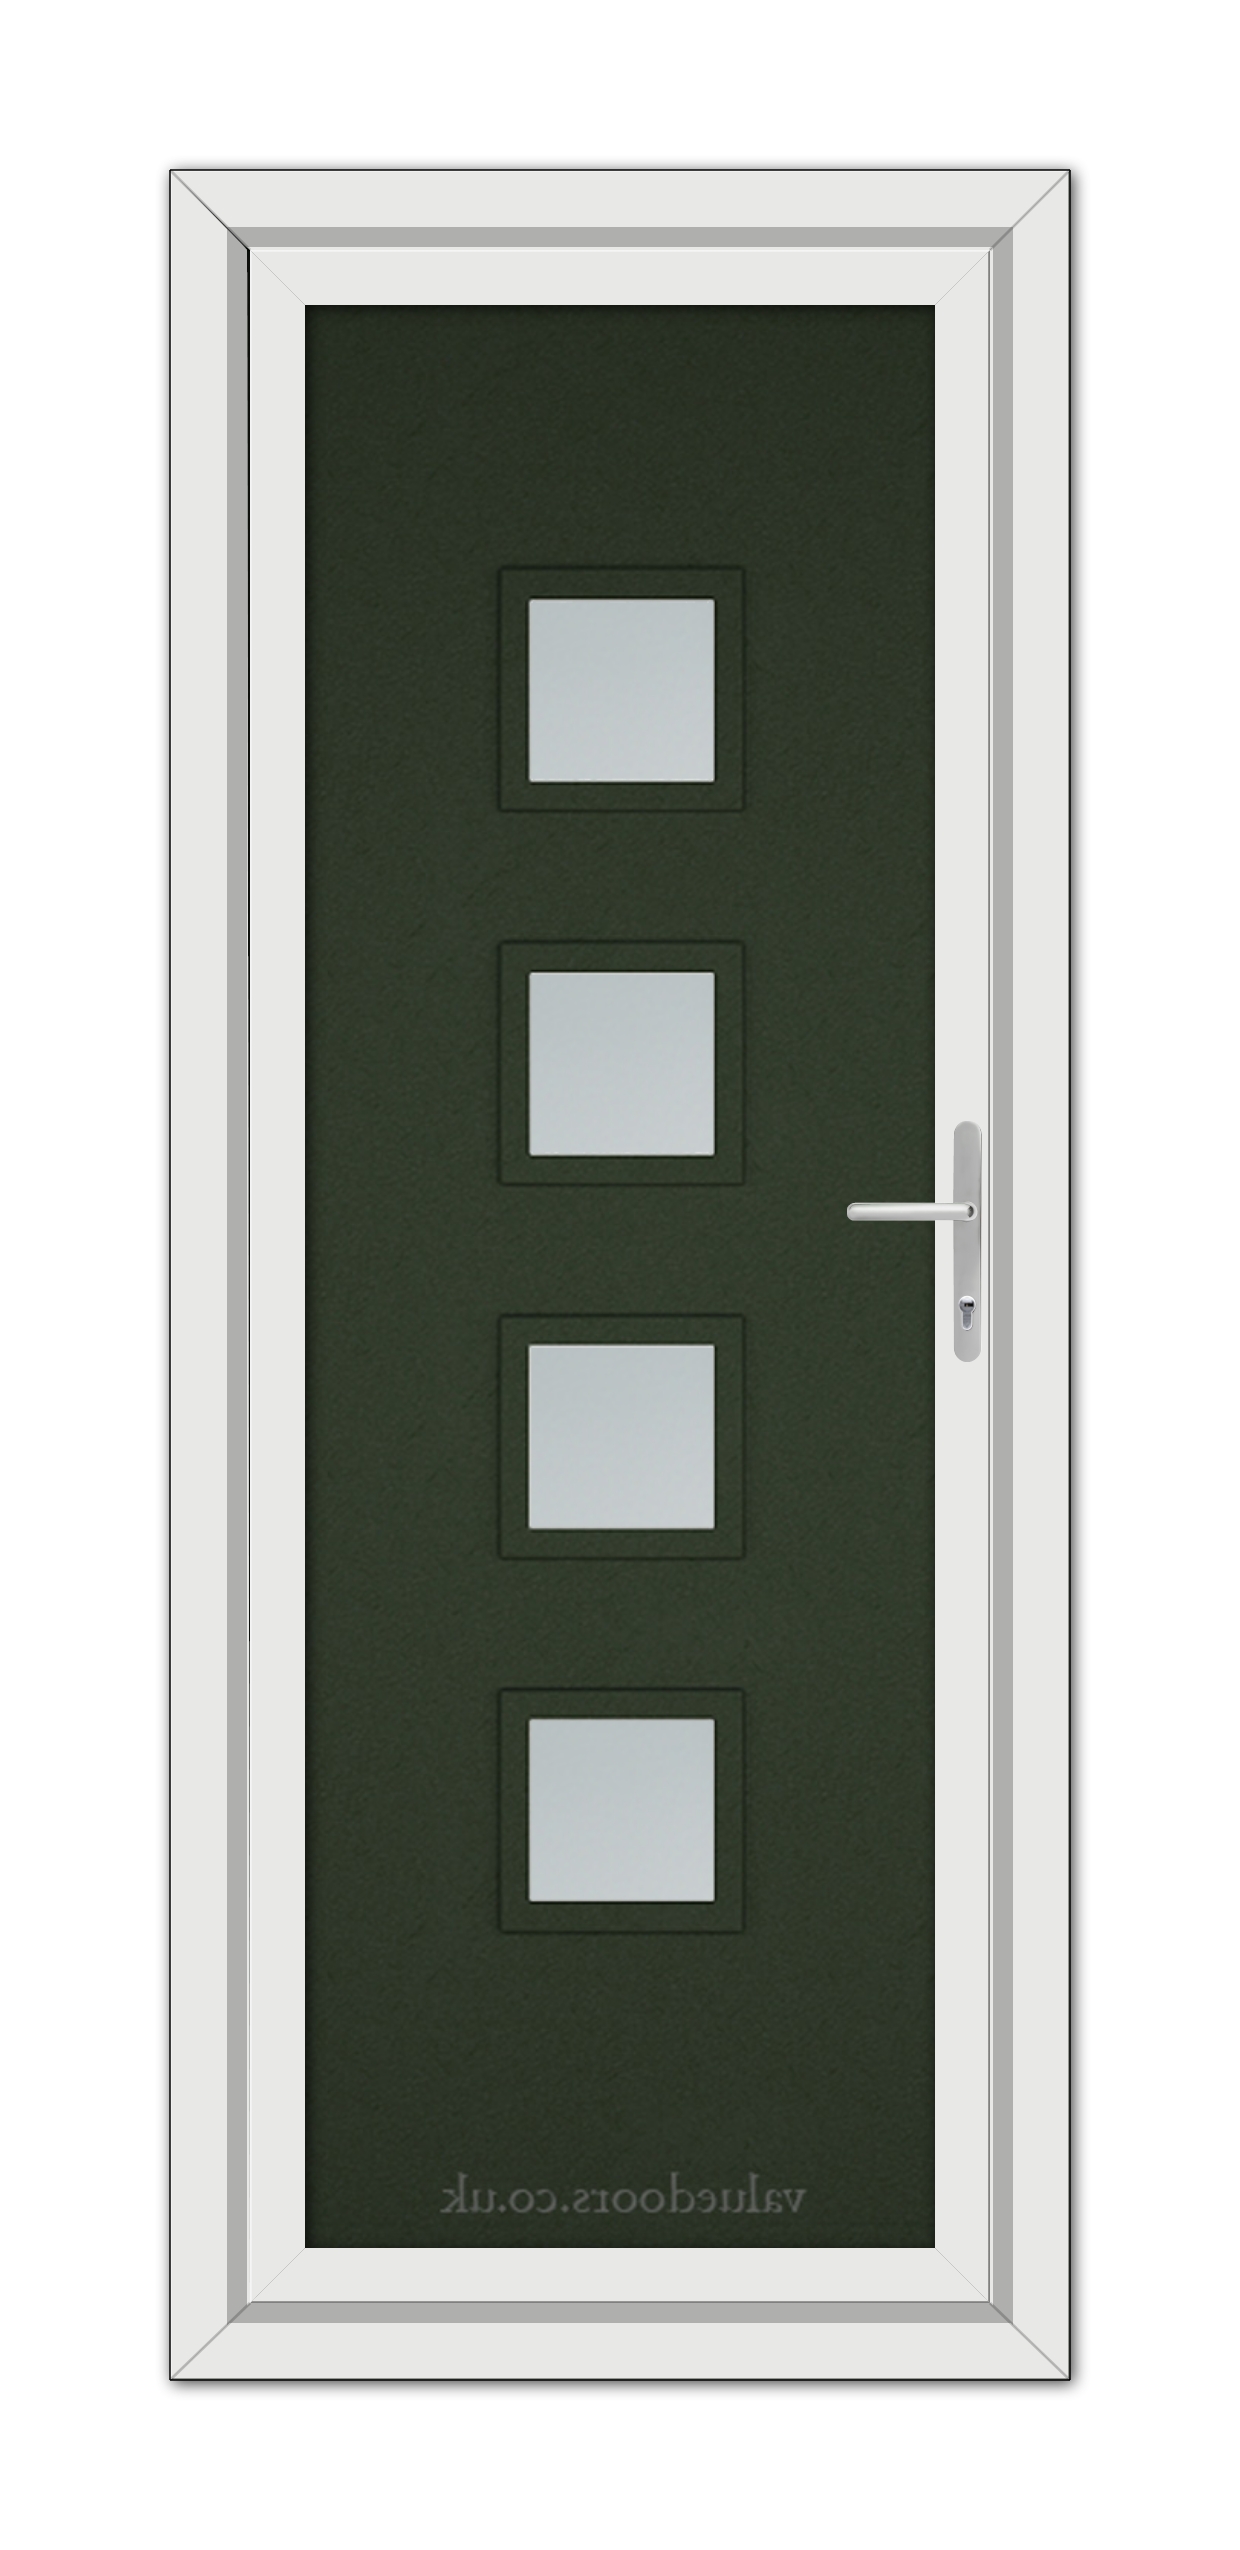 A close-up of a Green Modern 5034 uPVC Door.